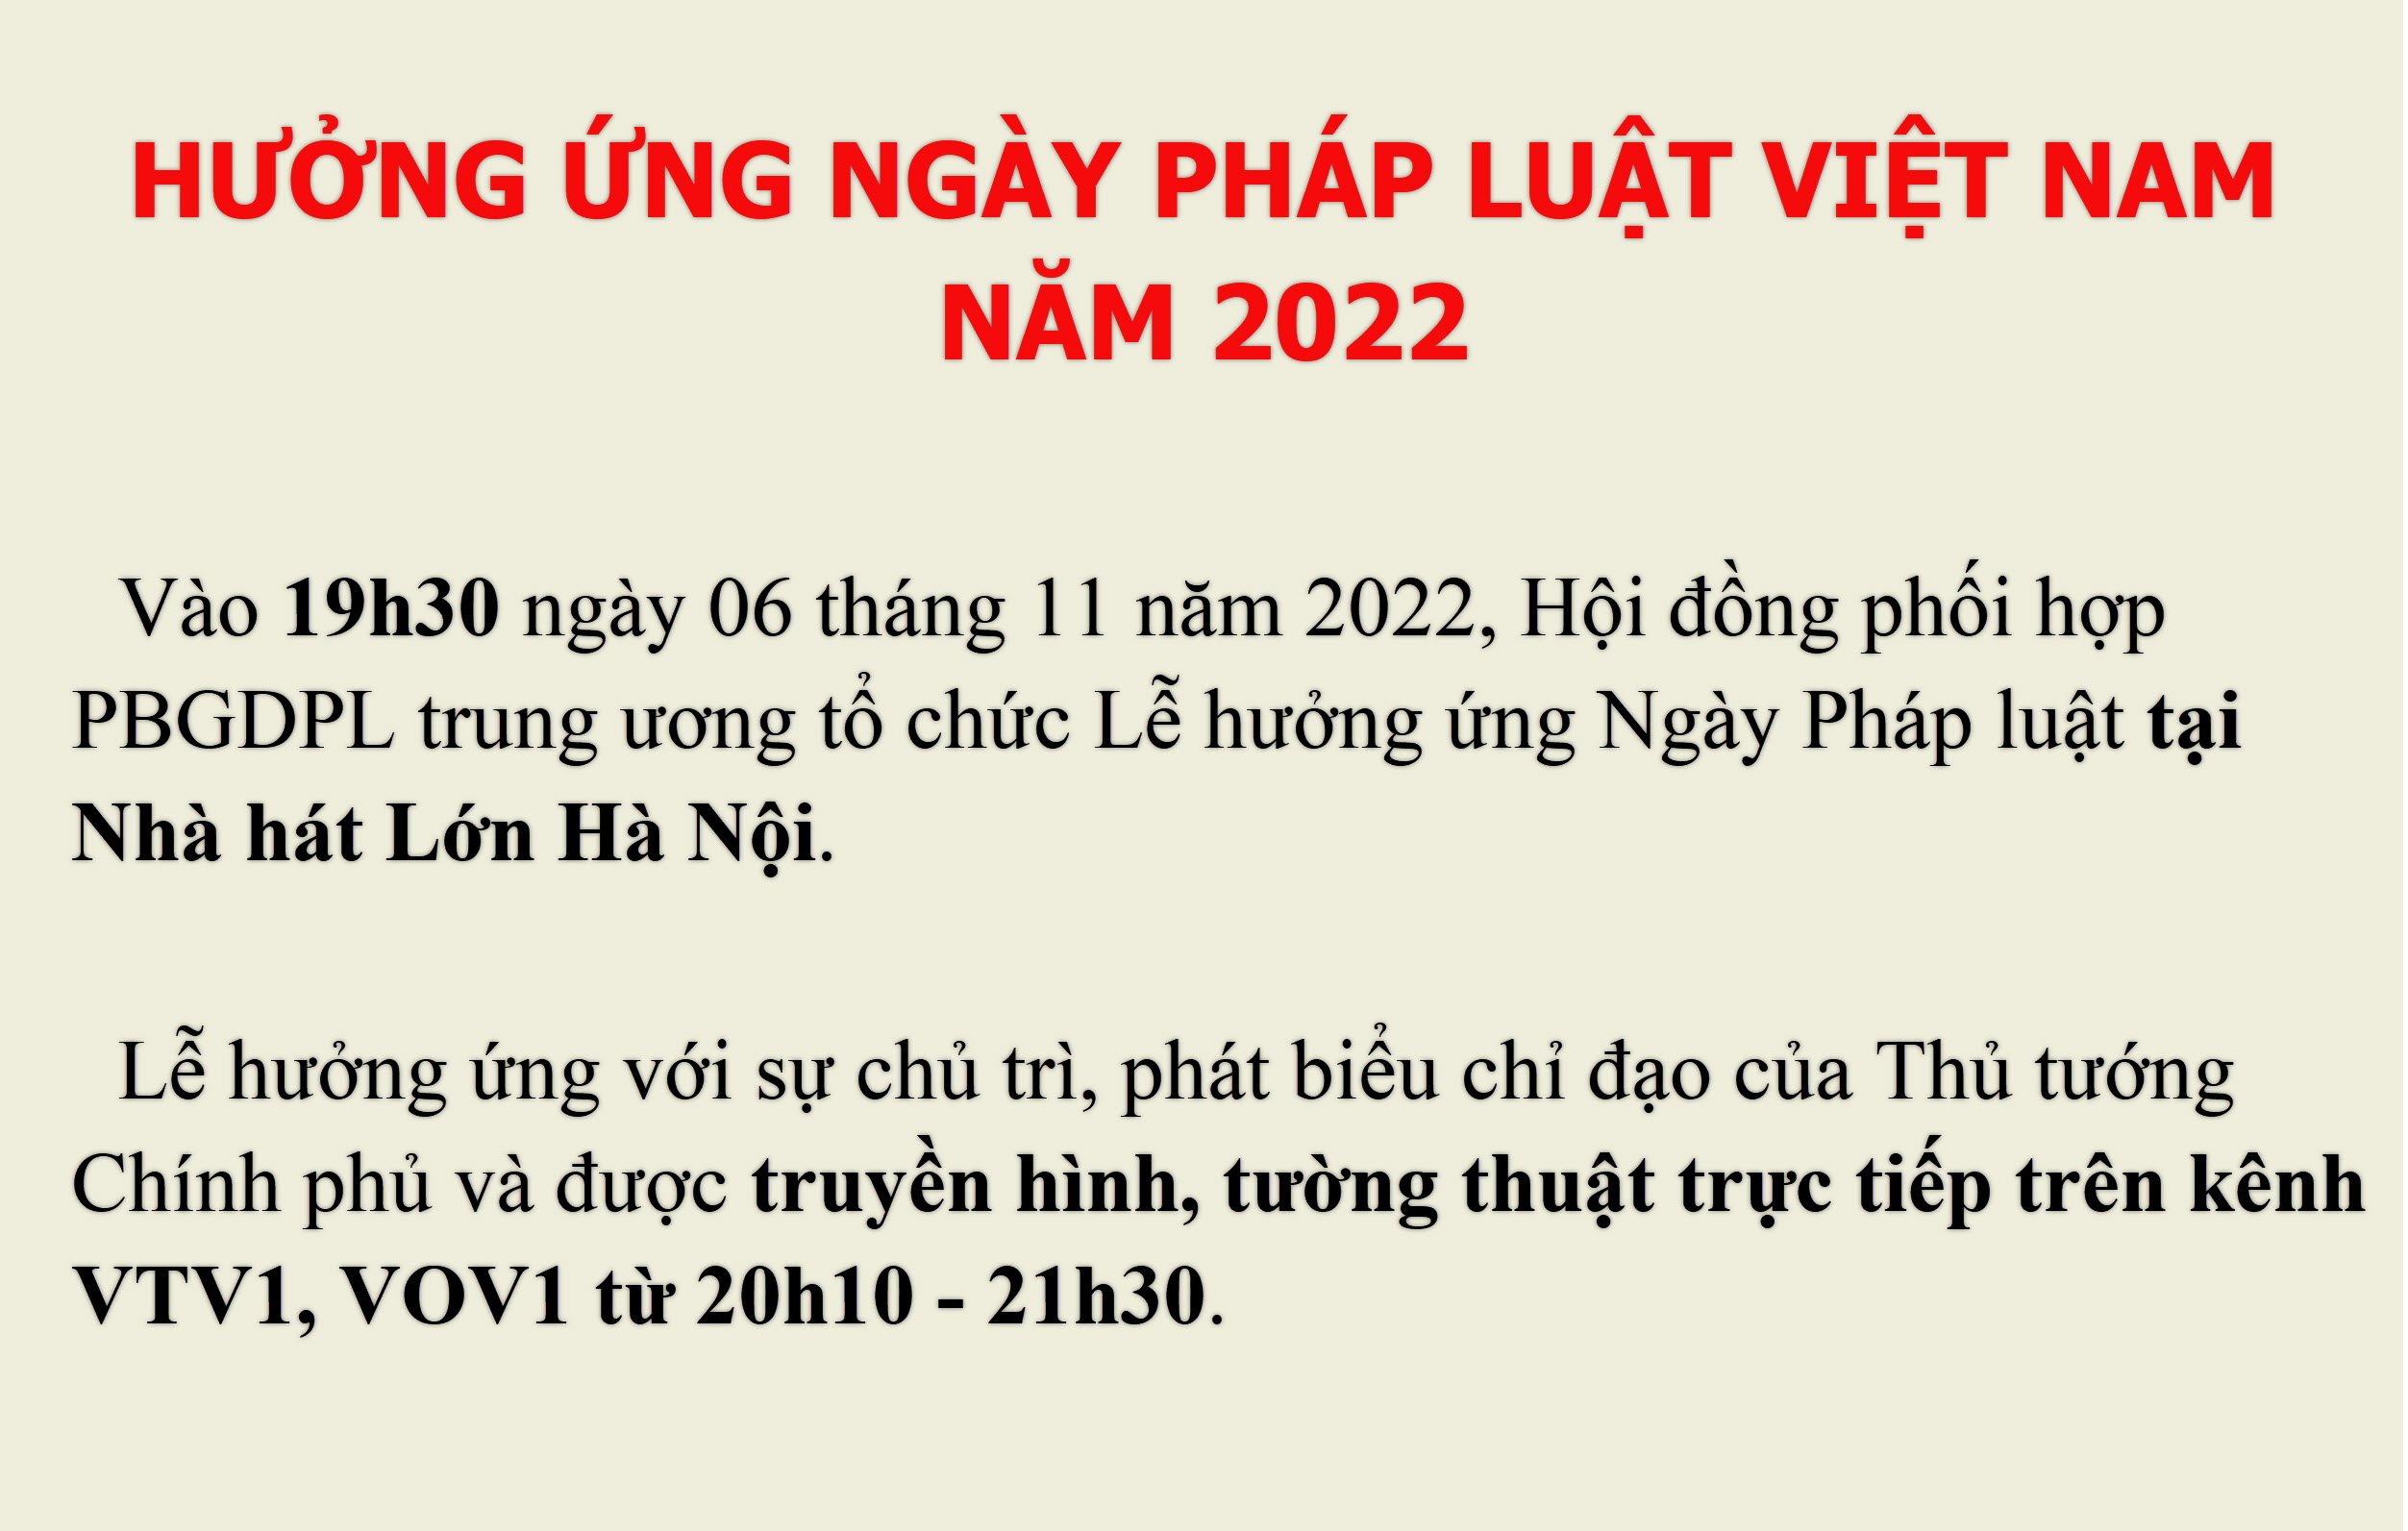 20h10 ngày 06/11/2022 tổ chức truyền hình trực tiếp Lễ Hưởng ứng Ngày Pháp luật Việt Nam năm 2022